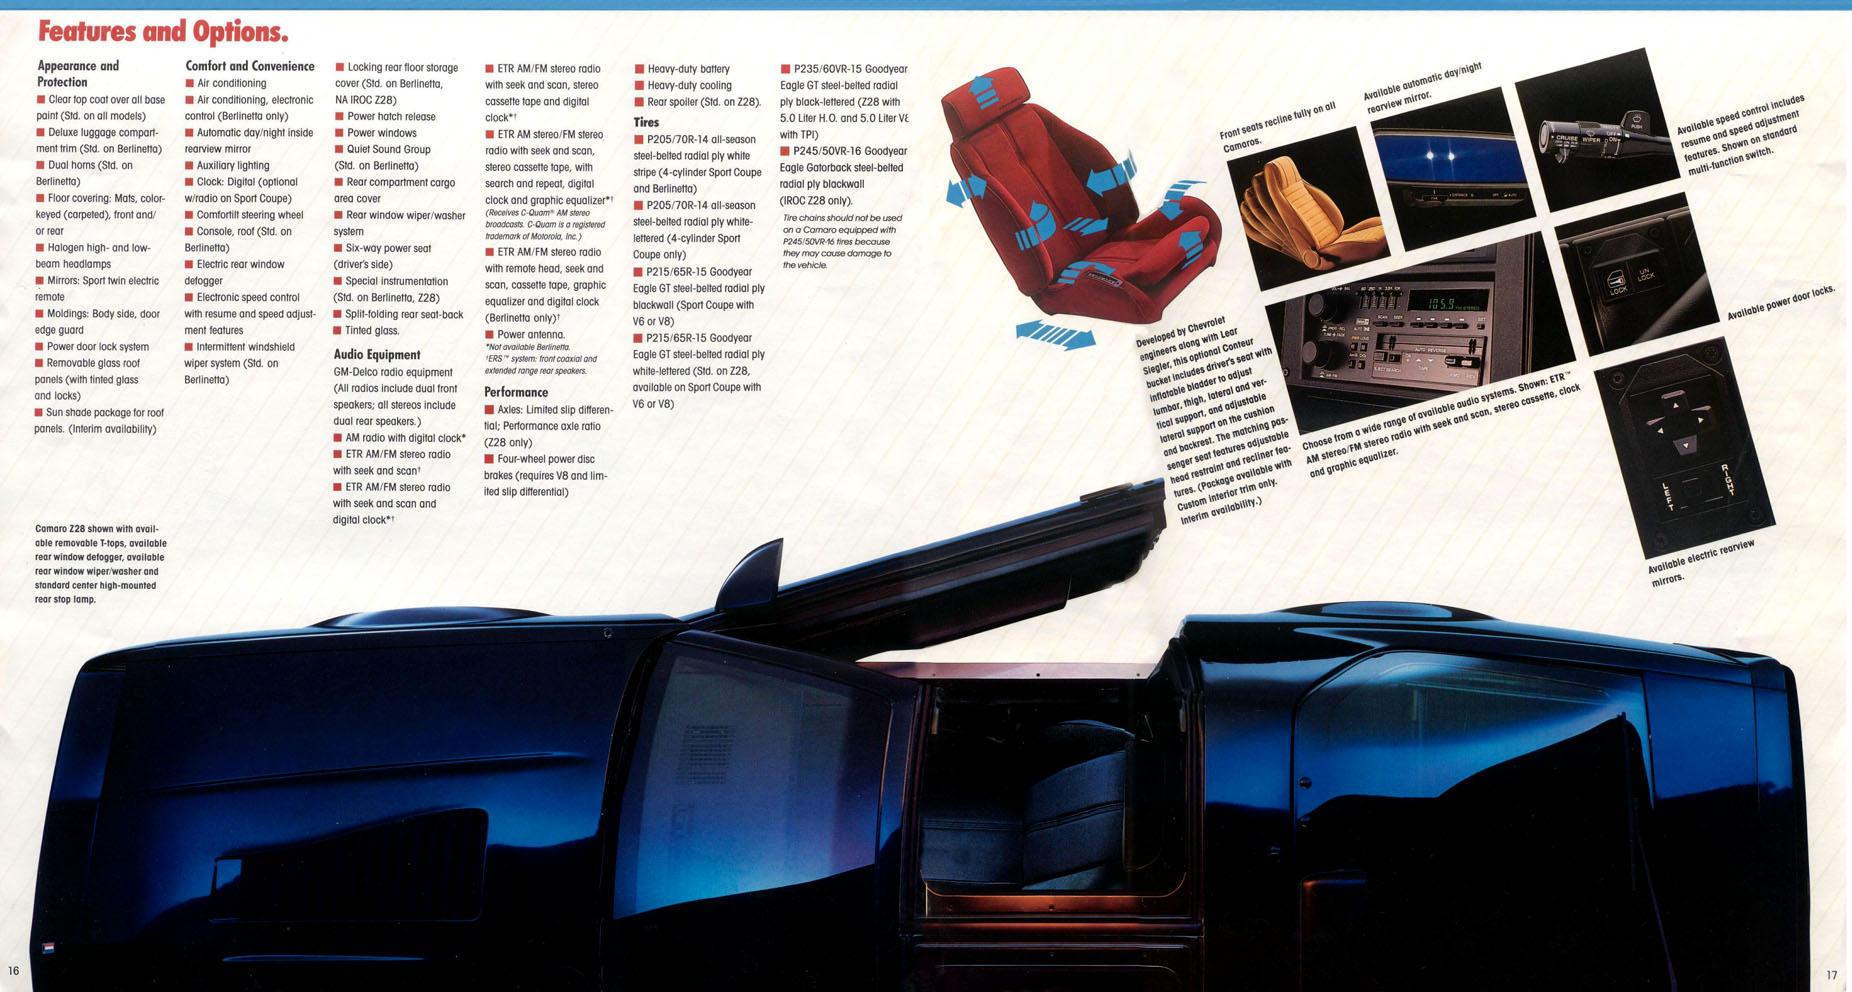 1986 Camaro OEM Brochure (9)